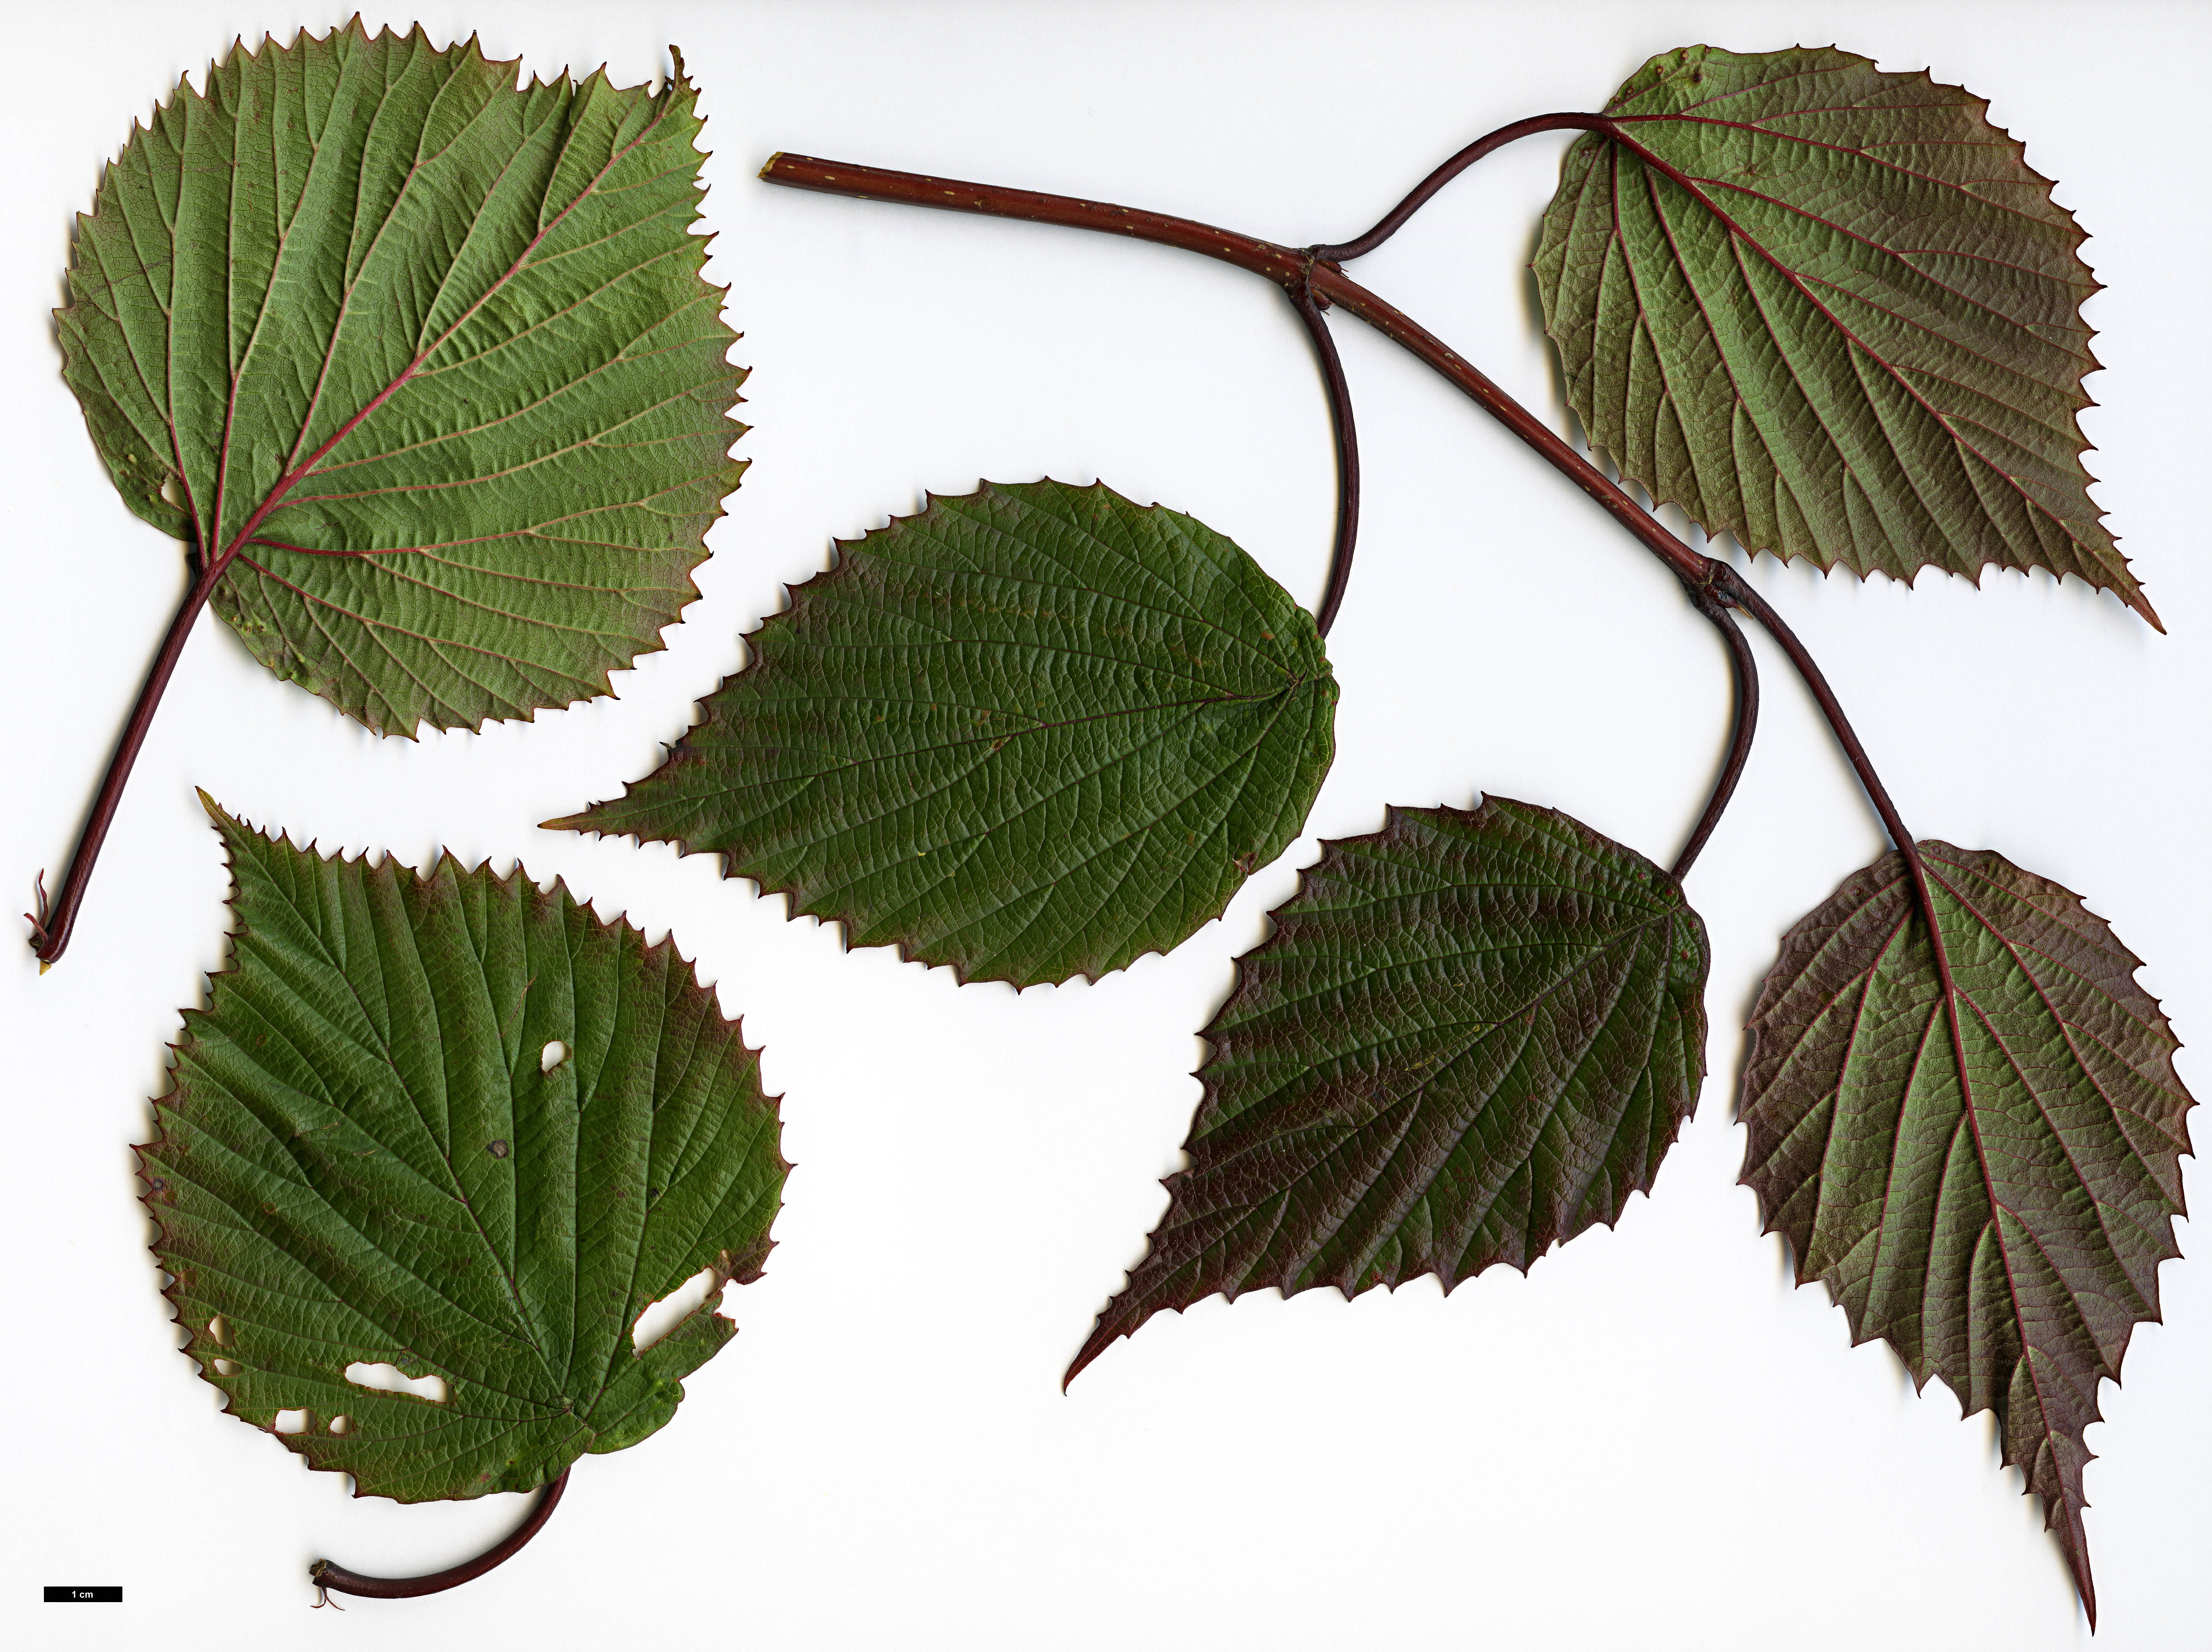 High resolution image: Family: Adoxaceae - Genus: Viburnum - Taxon: betulifolium